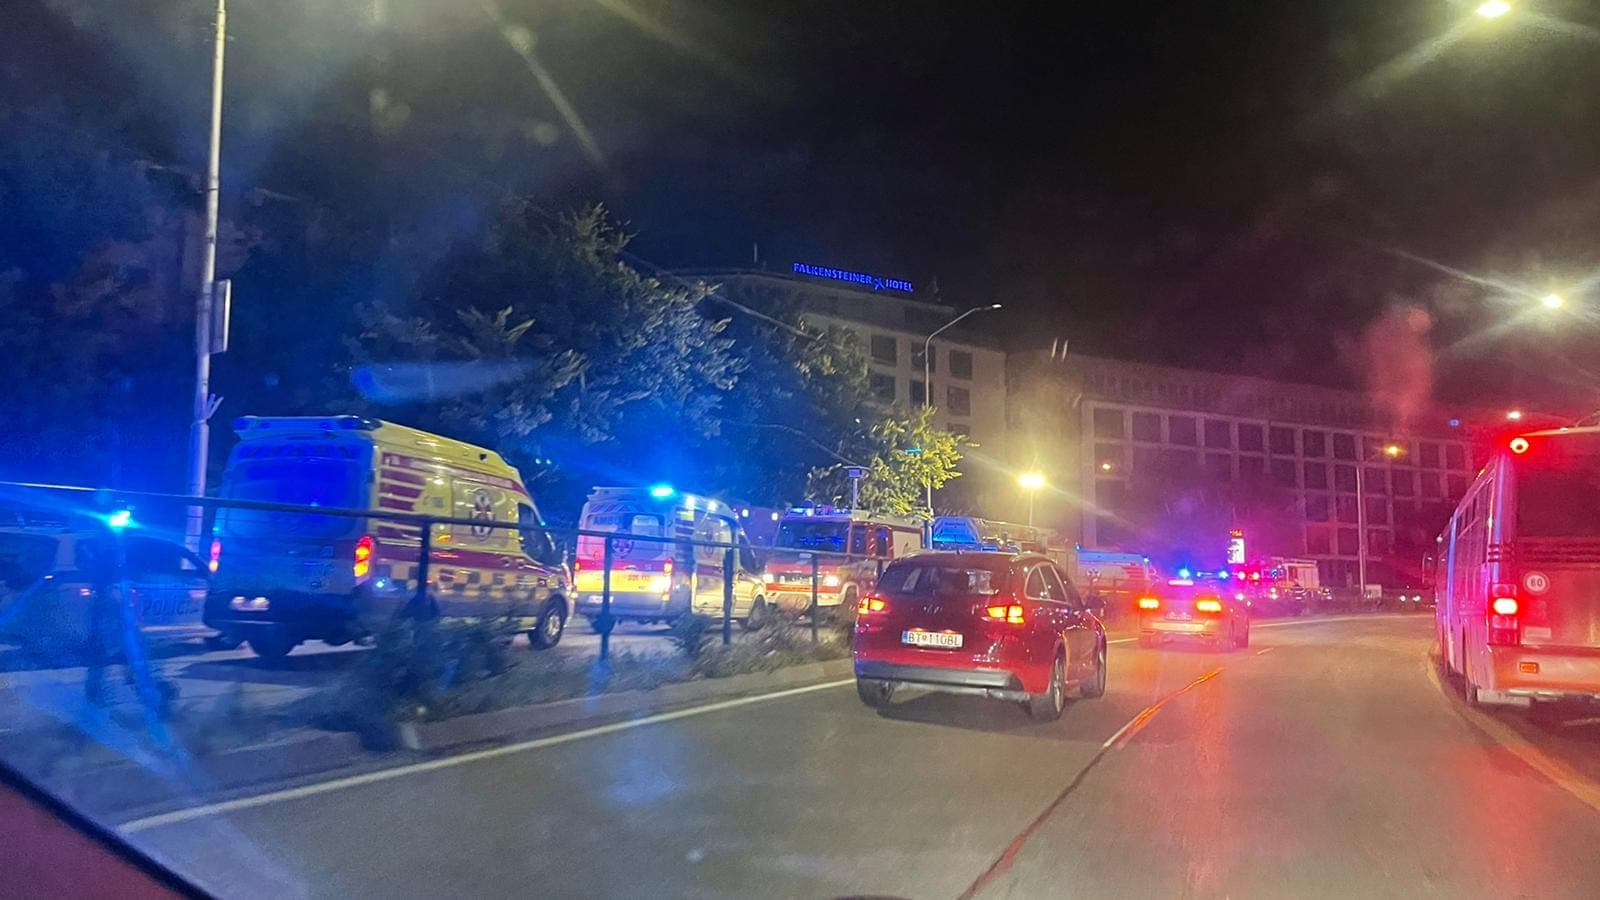 Frissítve: Tragikus autóbaleset Pozsonyban, öt halott, tíz sebesült